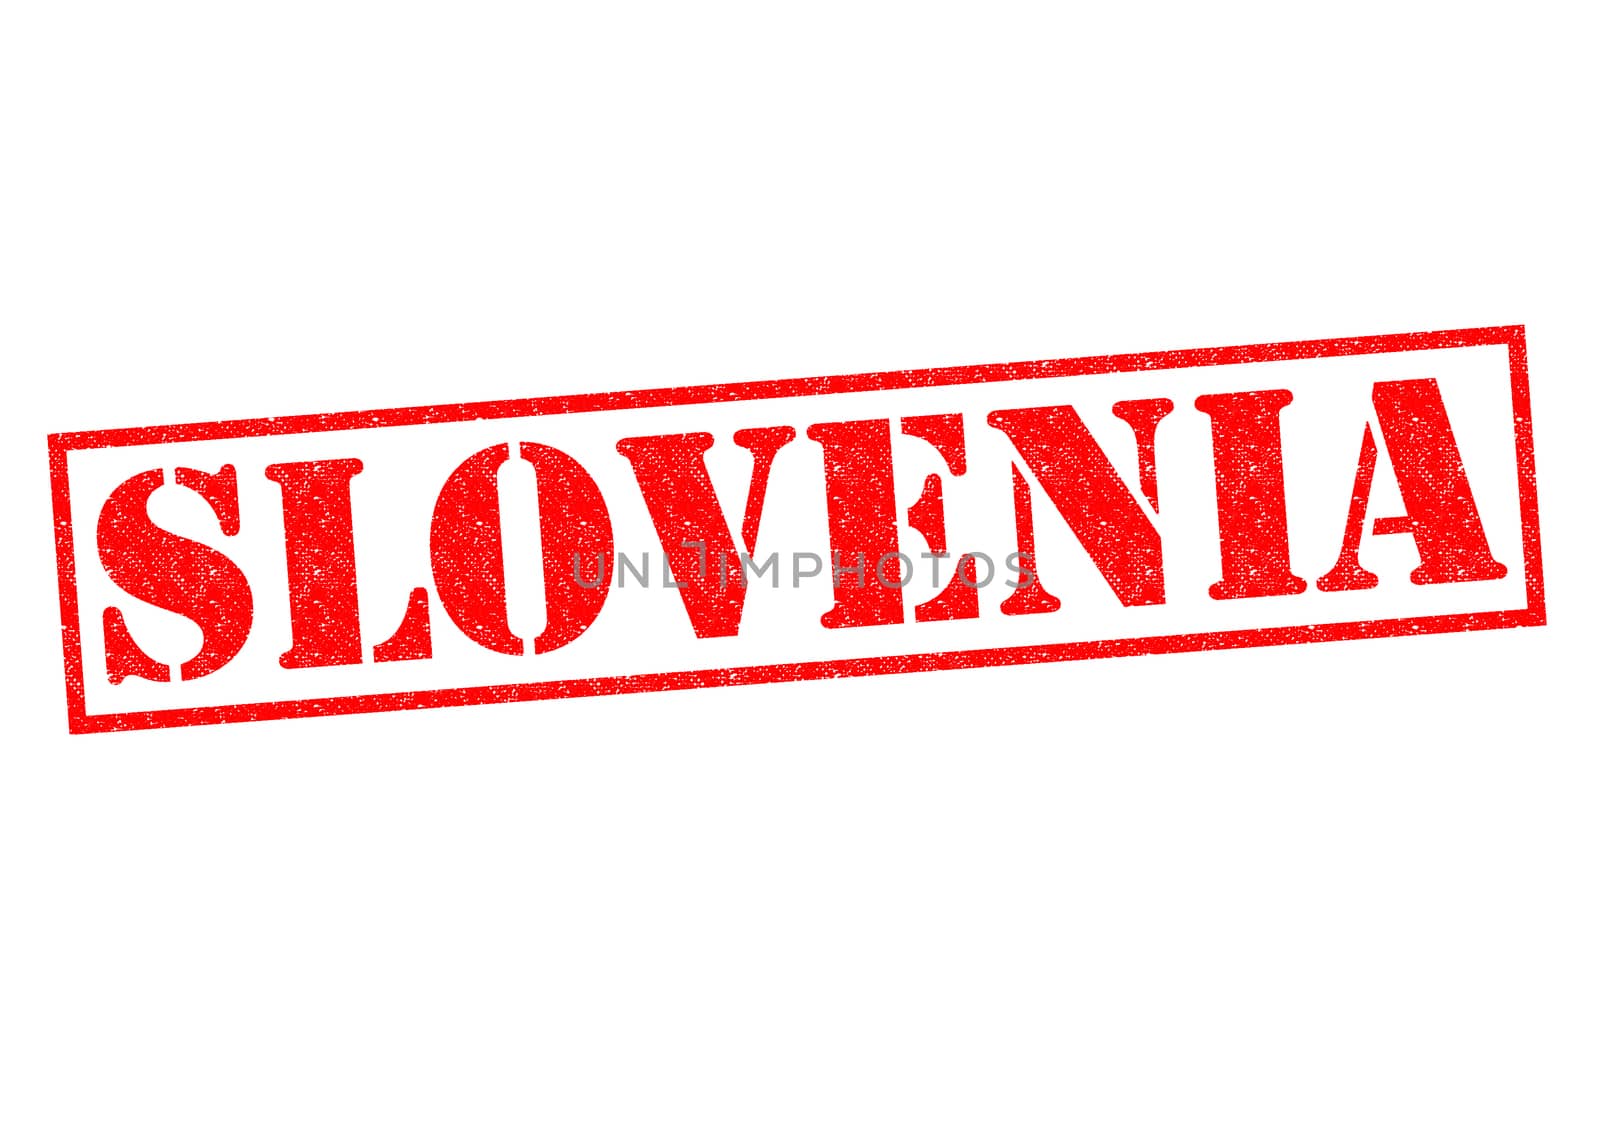 SLOVENIA by chrisdorney